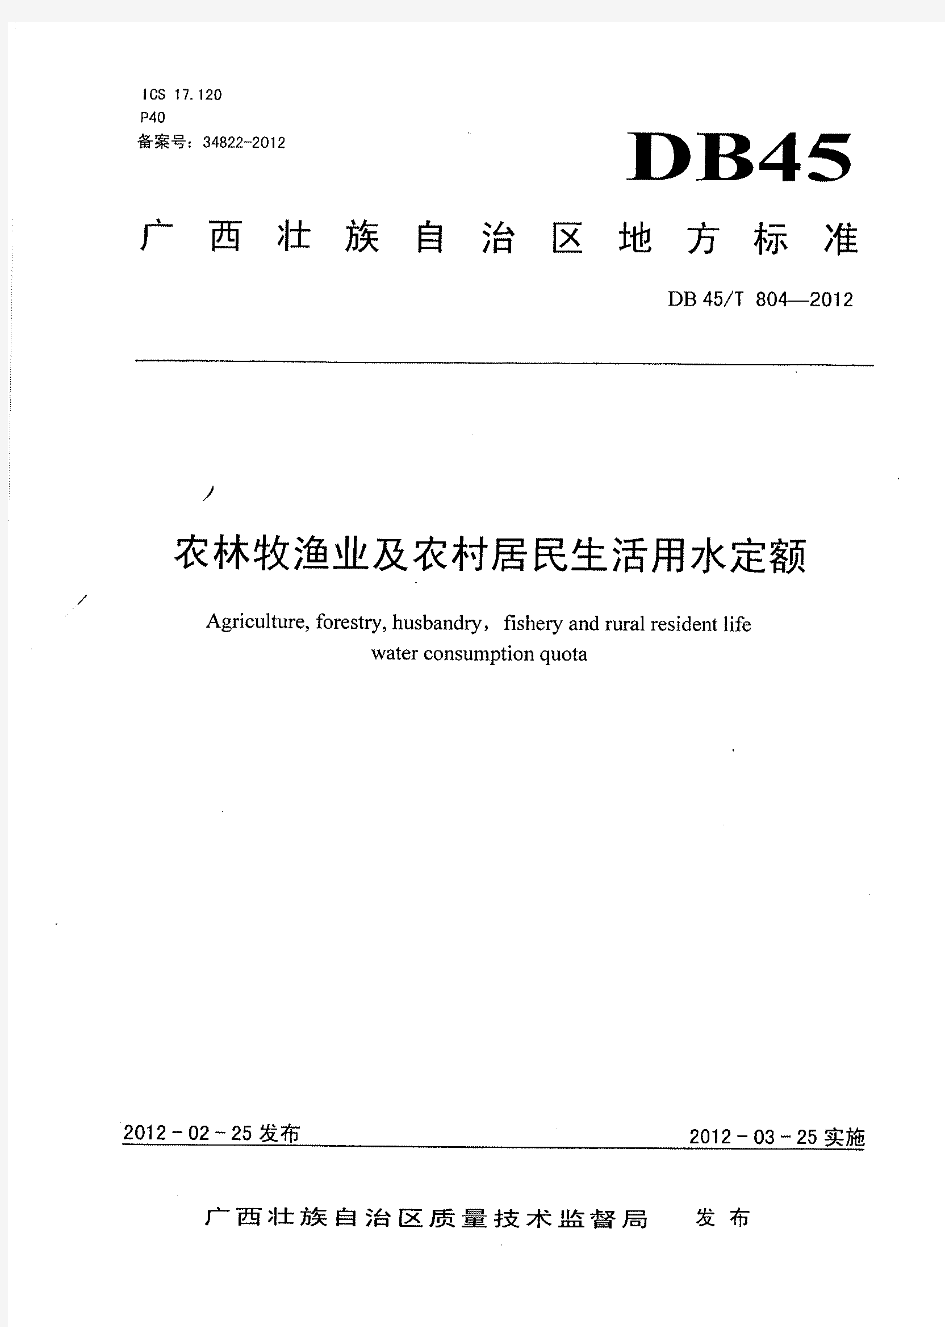 广西农林牧渔业及农村居民生活用水定额